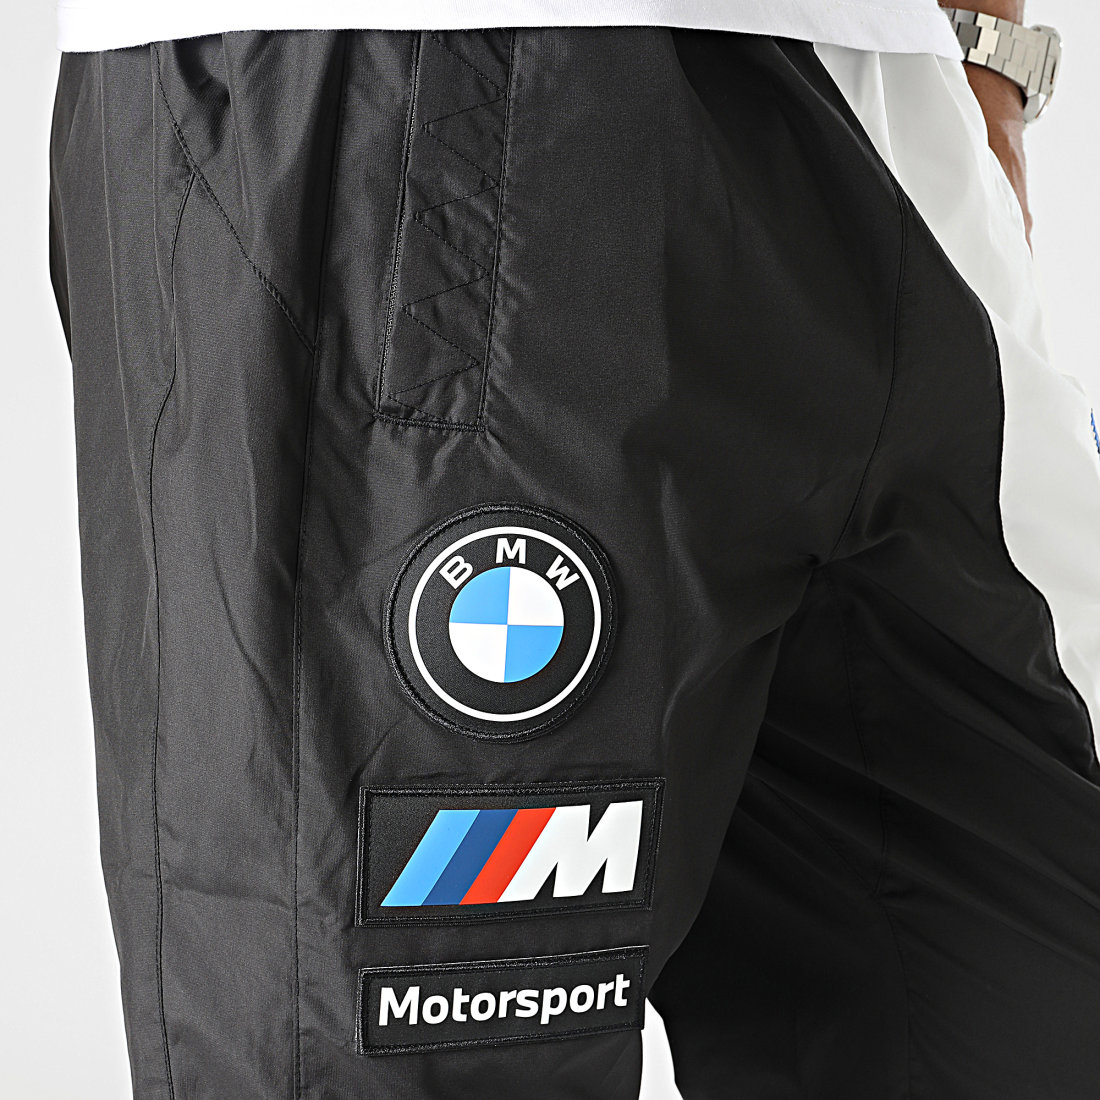 Pantalon BMW Motorsport Puma Jogging Race Noir / Blanc 539819-01 - homme